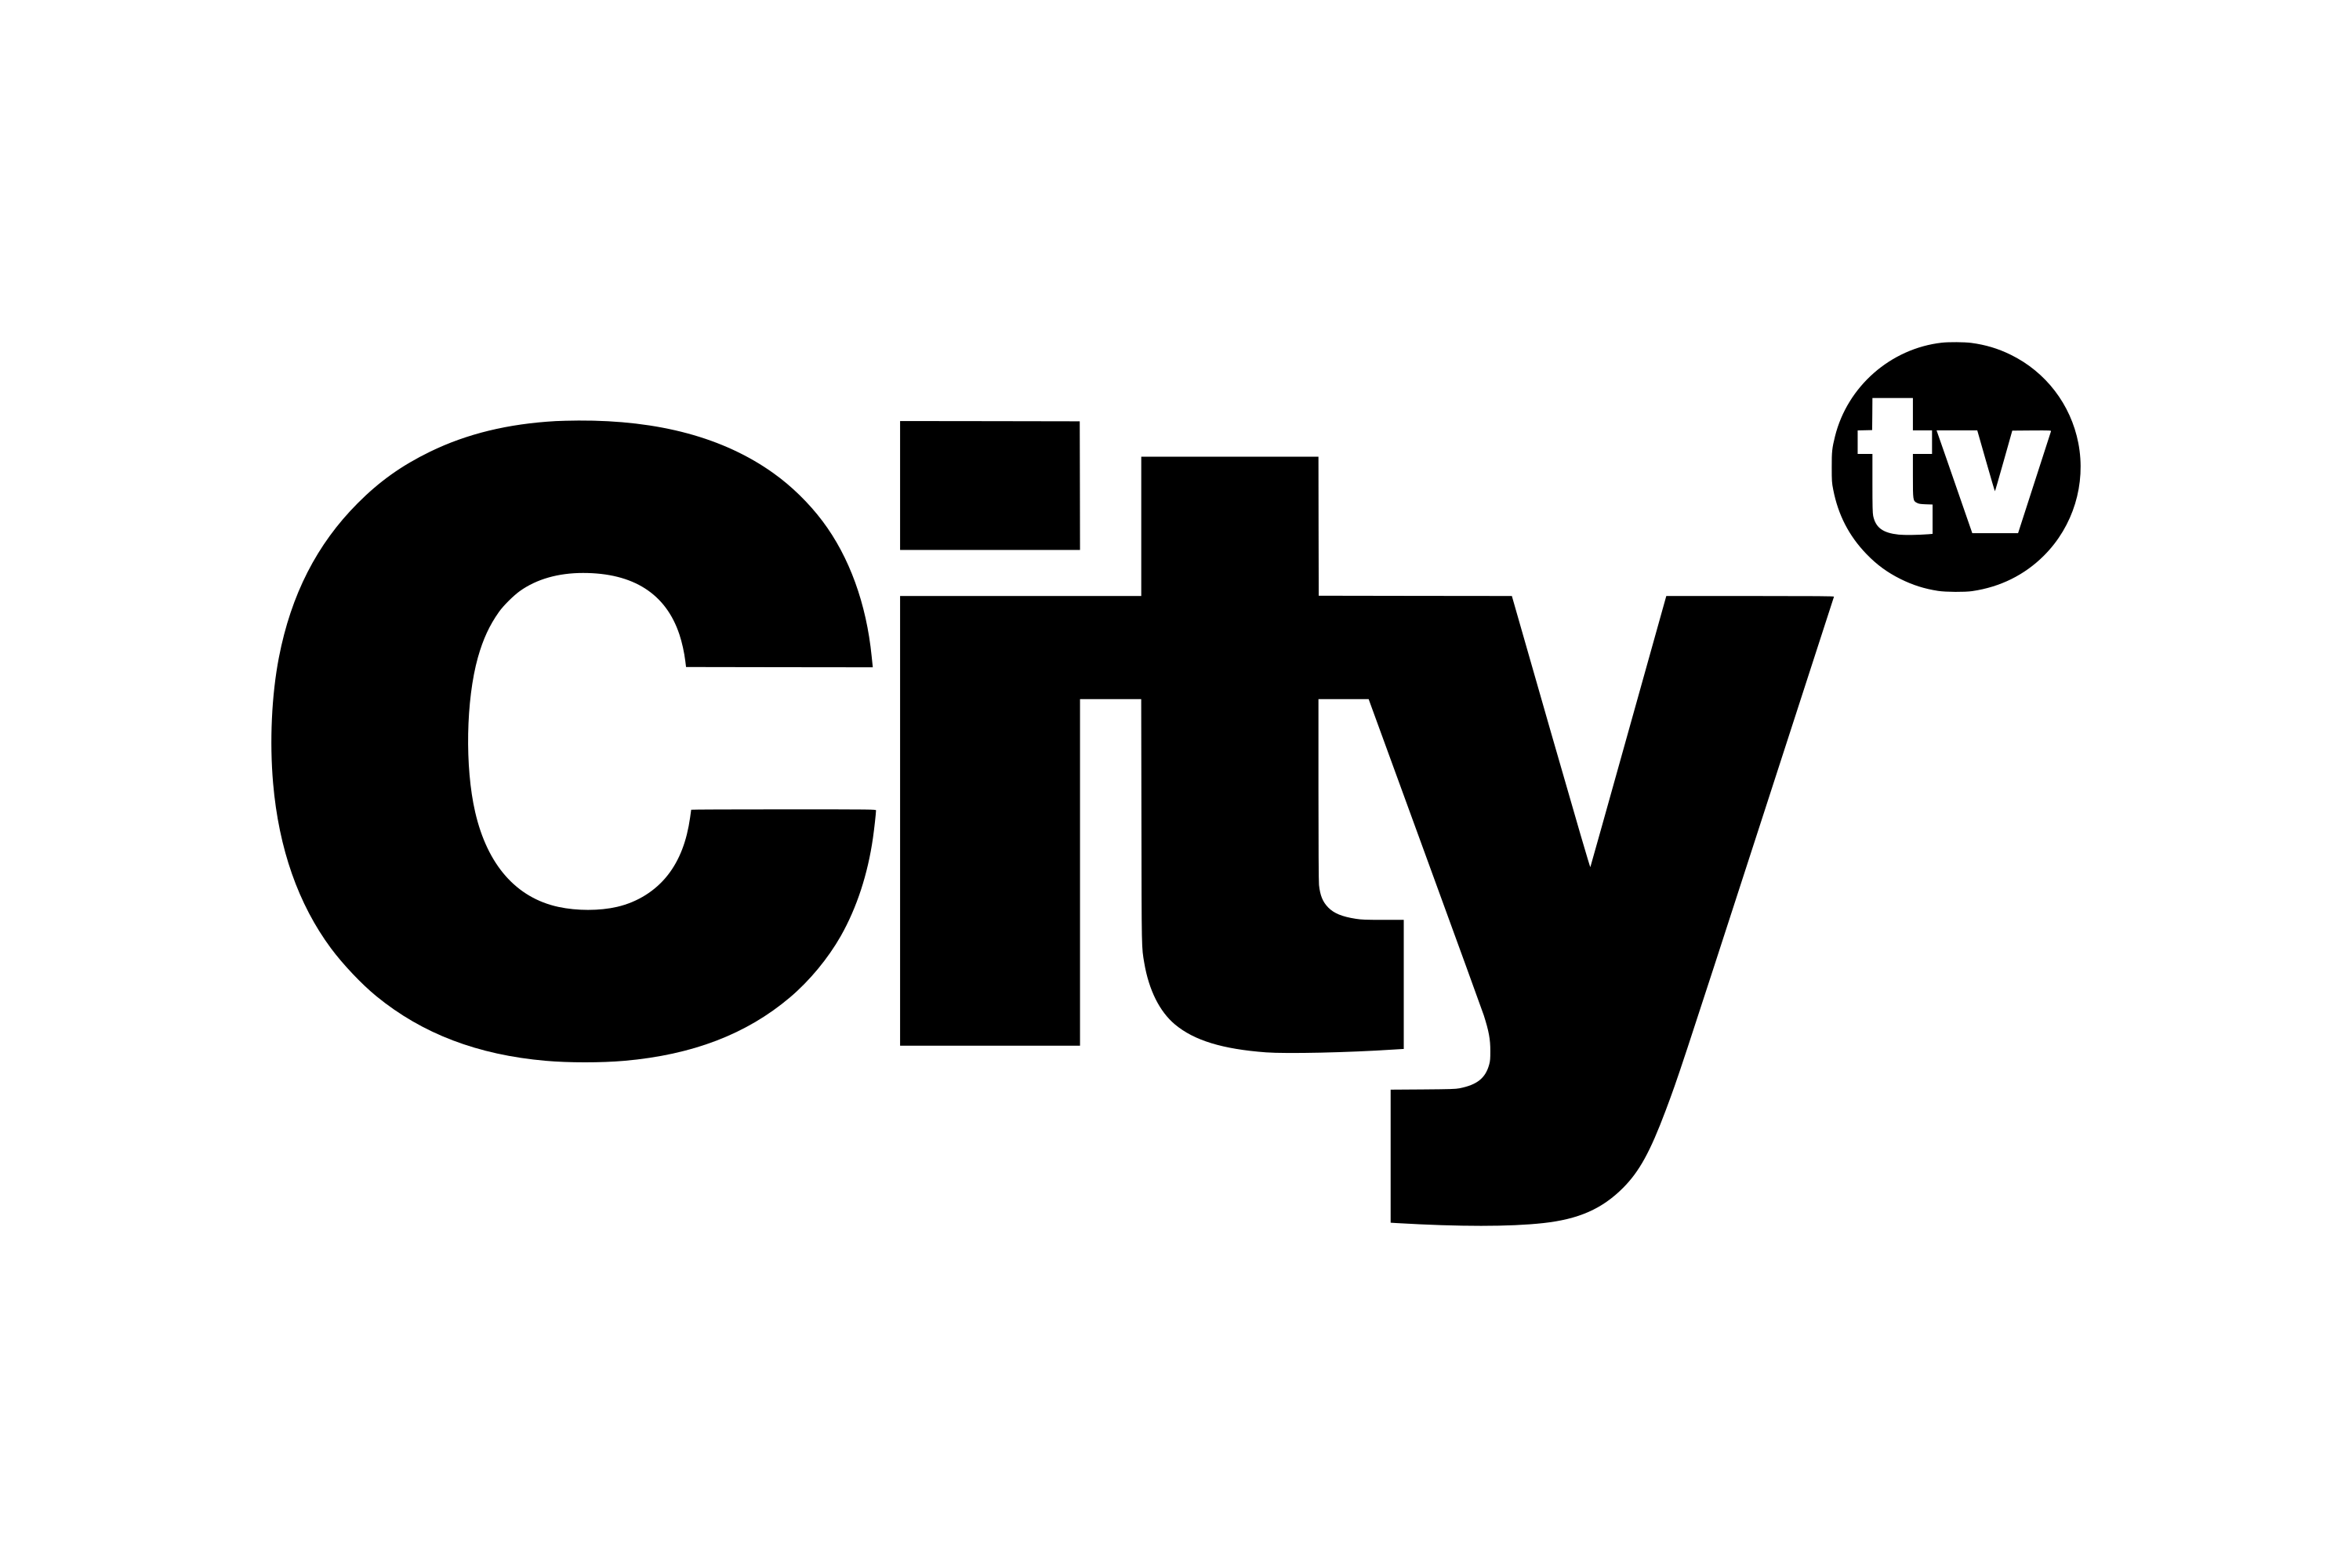 Download Citytv Logo in SVG Vector or PNG File Format - Logo.wine